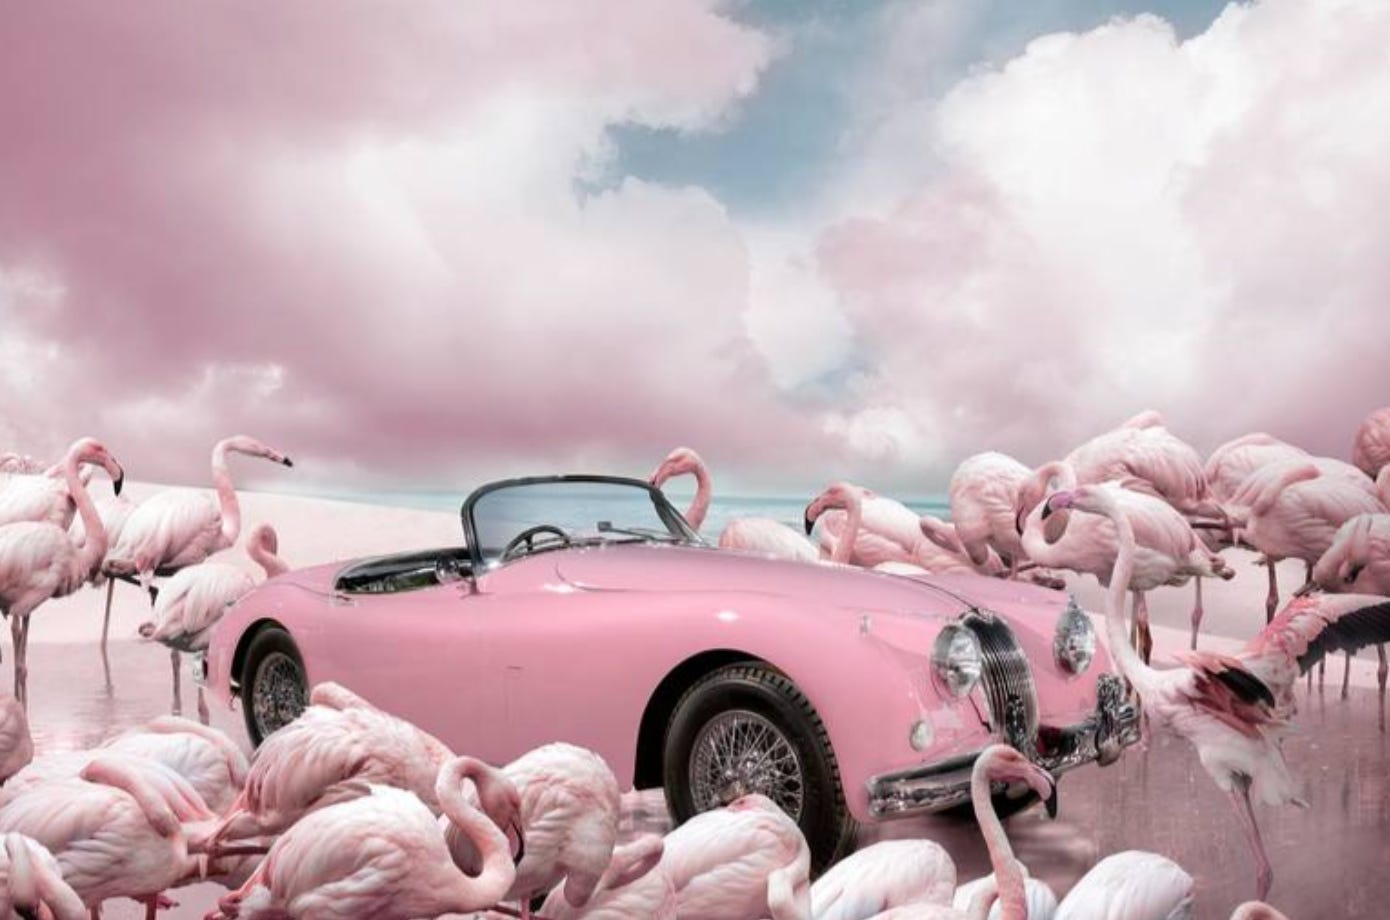 Descrição imagem: Colagem toda rosa com um carro conversível numa praia cercado por flamingos